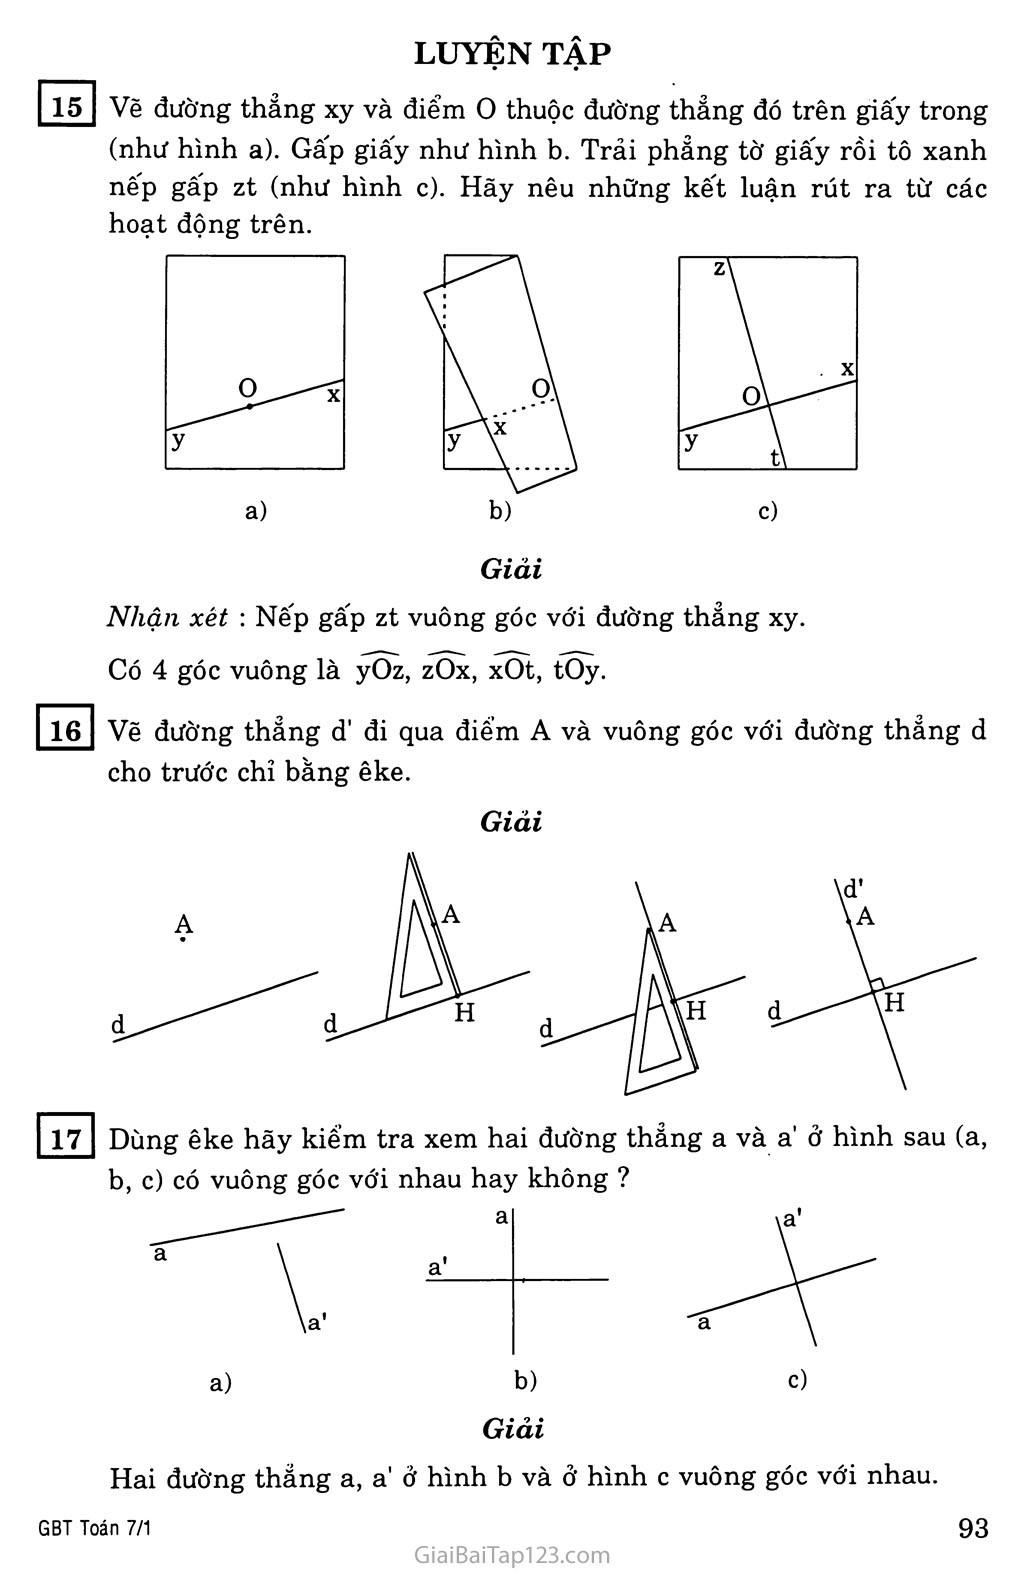 §2. Hai đường thẳng vuông góc trang 4